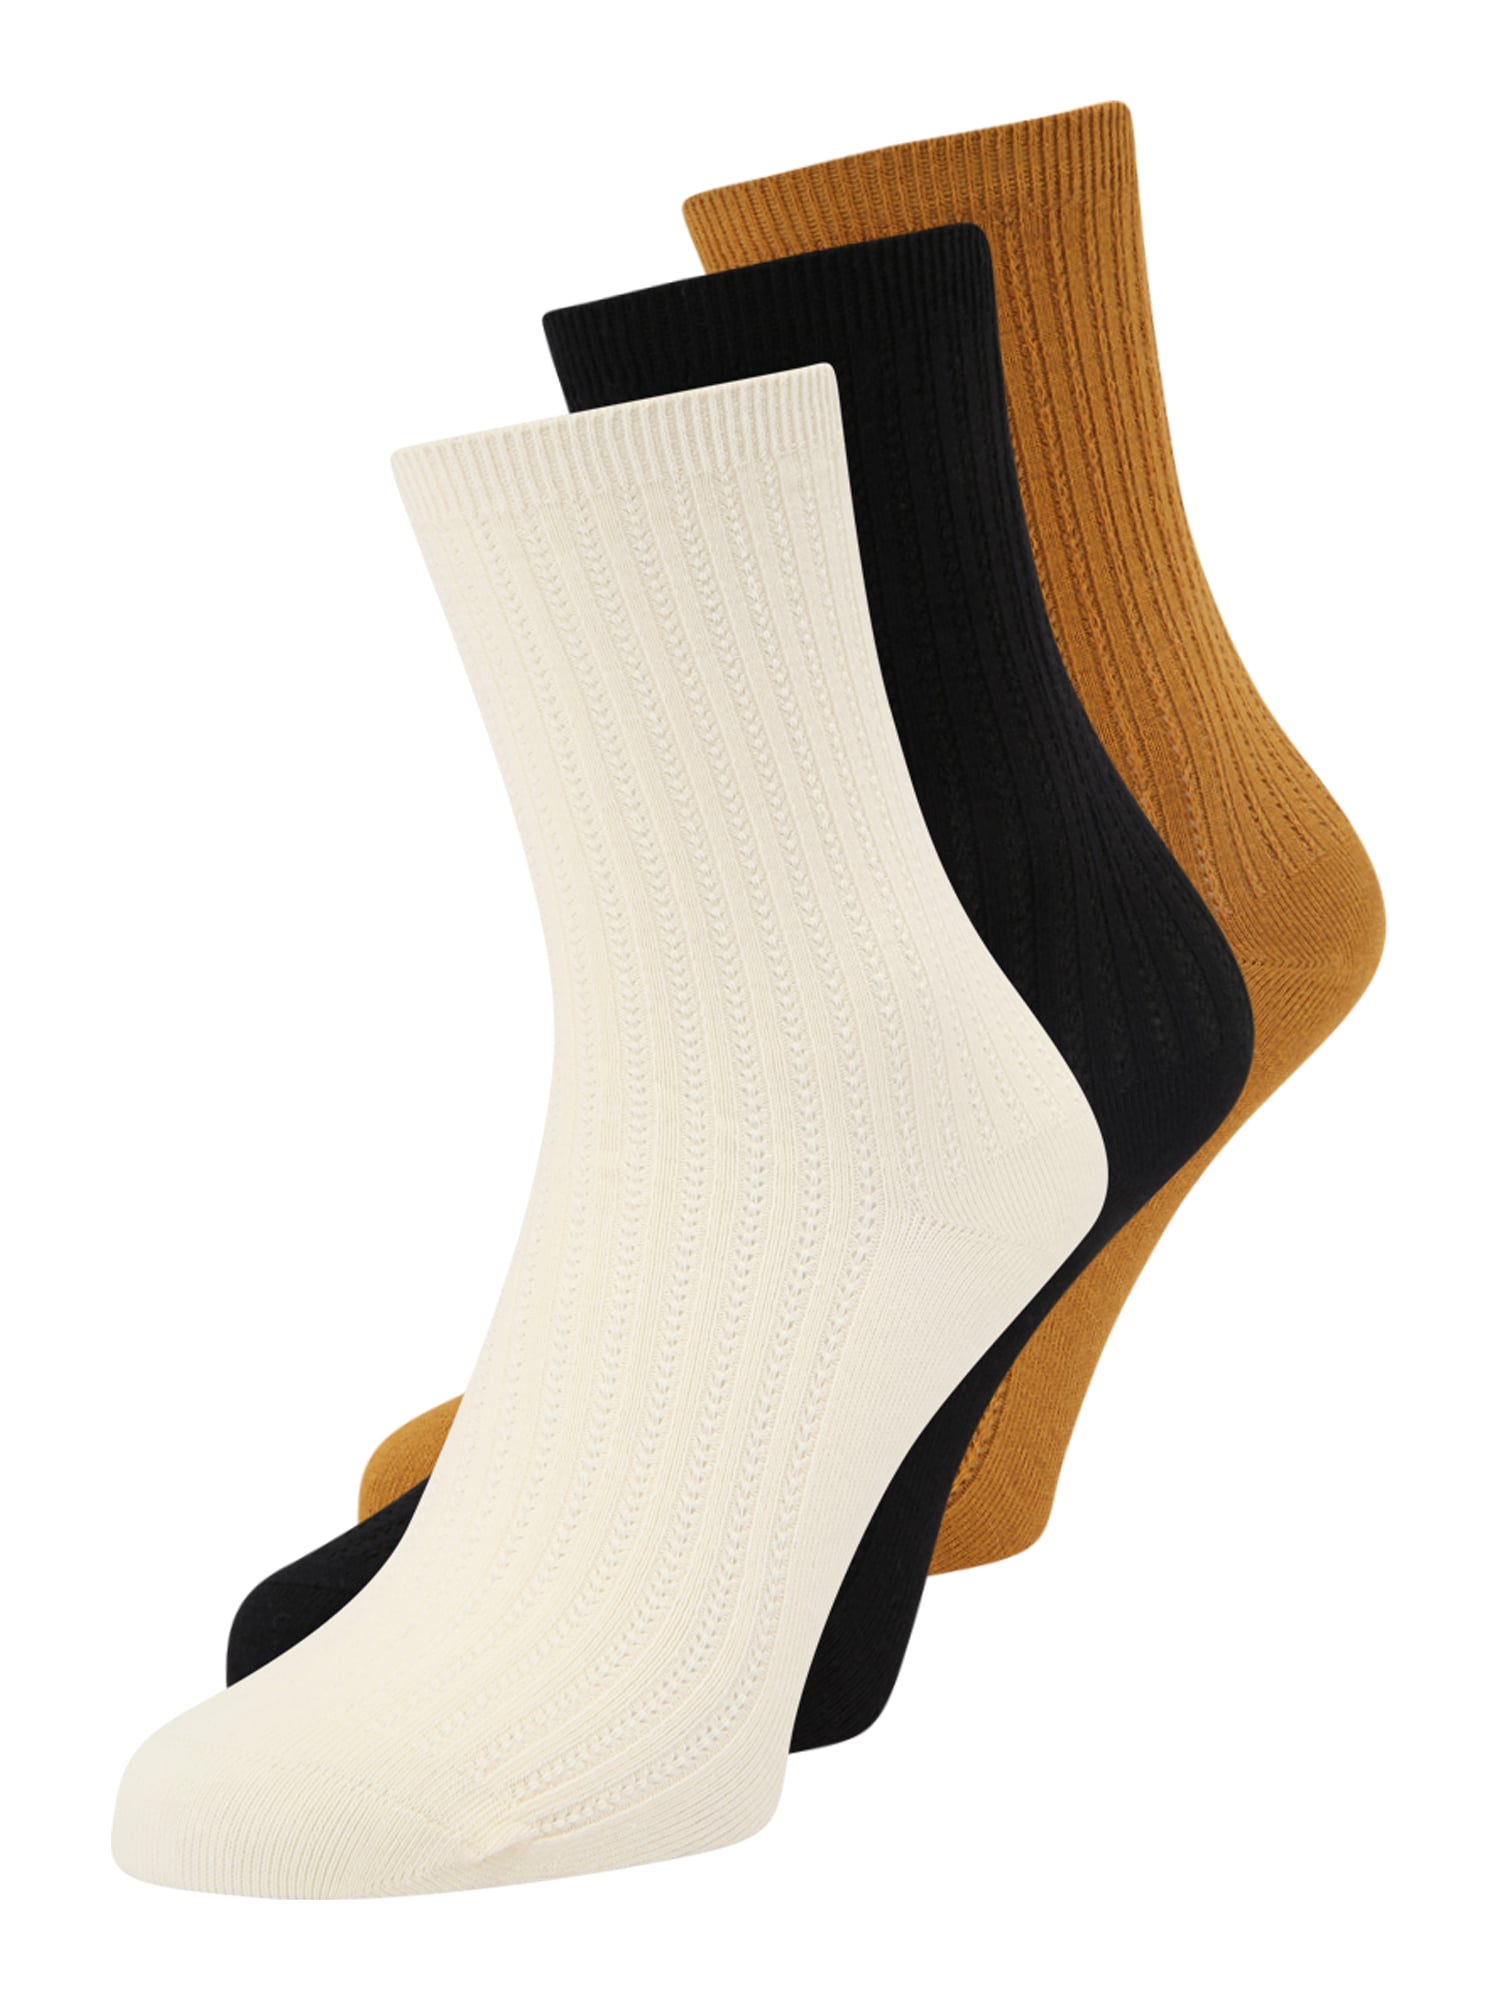 Ponožky piesková čierna biela BeckSöndergaard